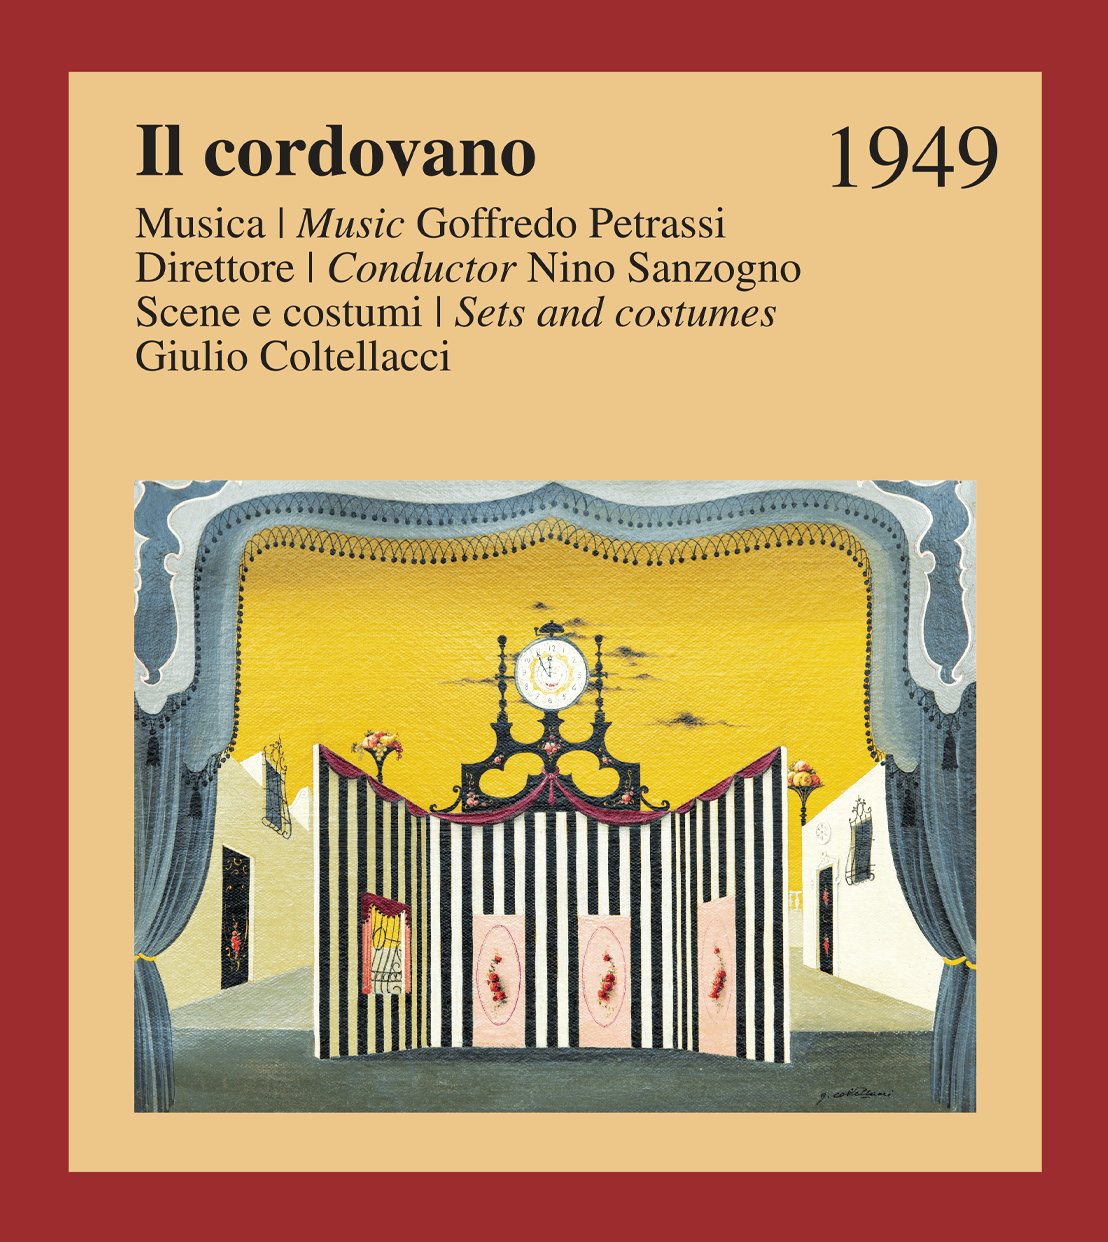 1949-Cordovano